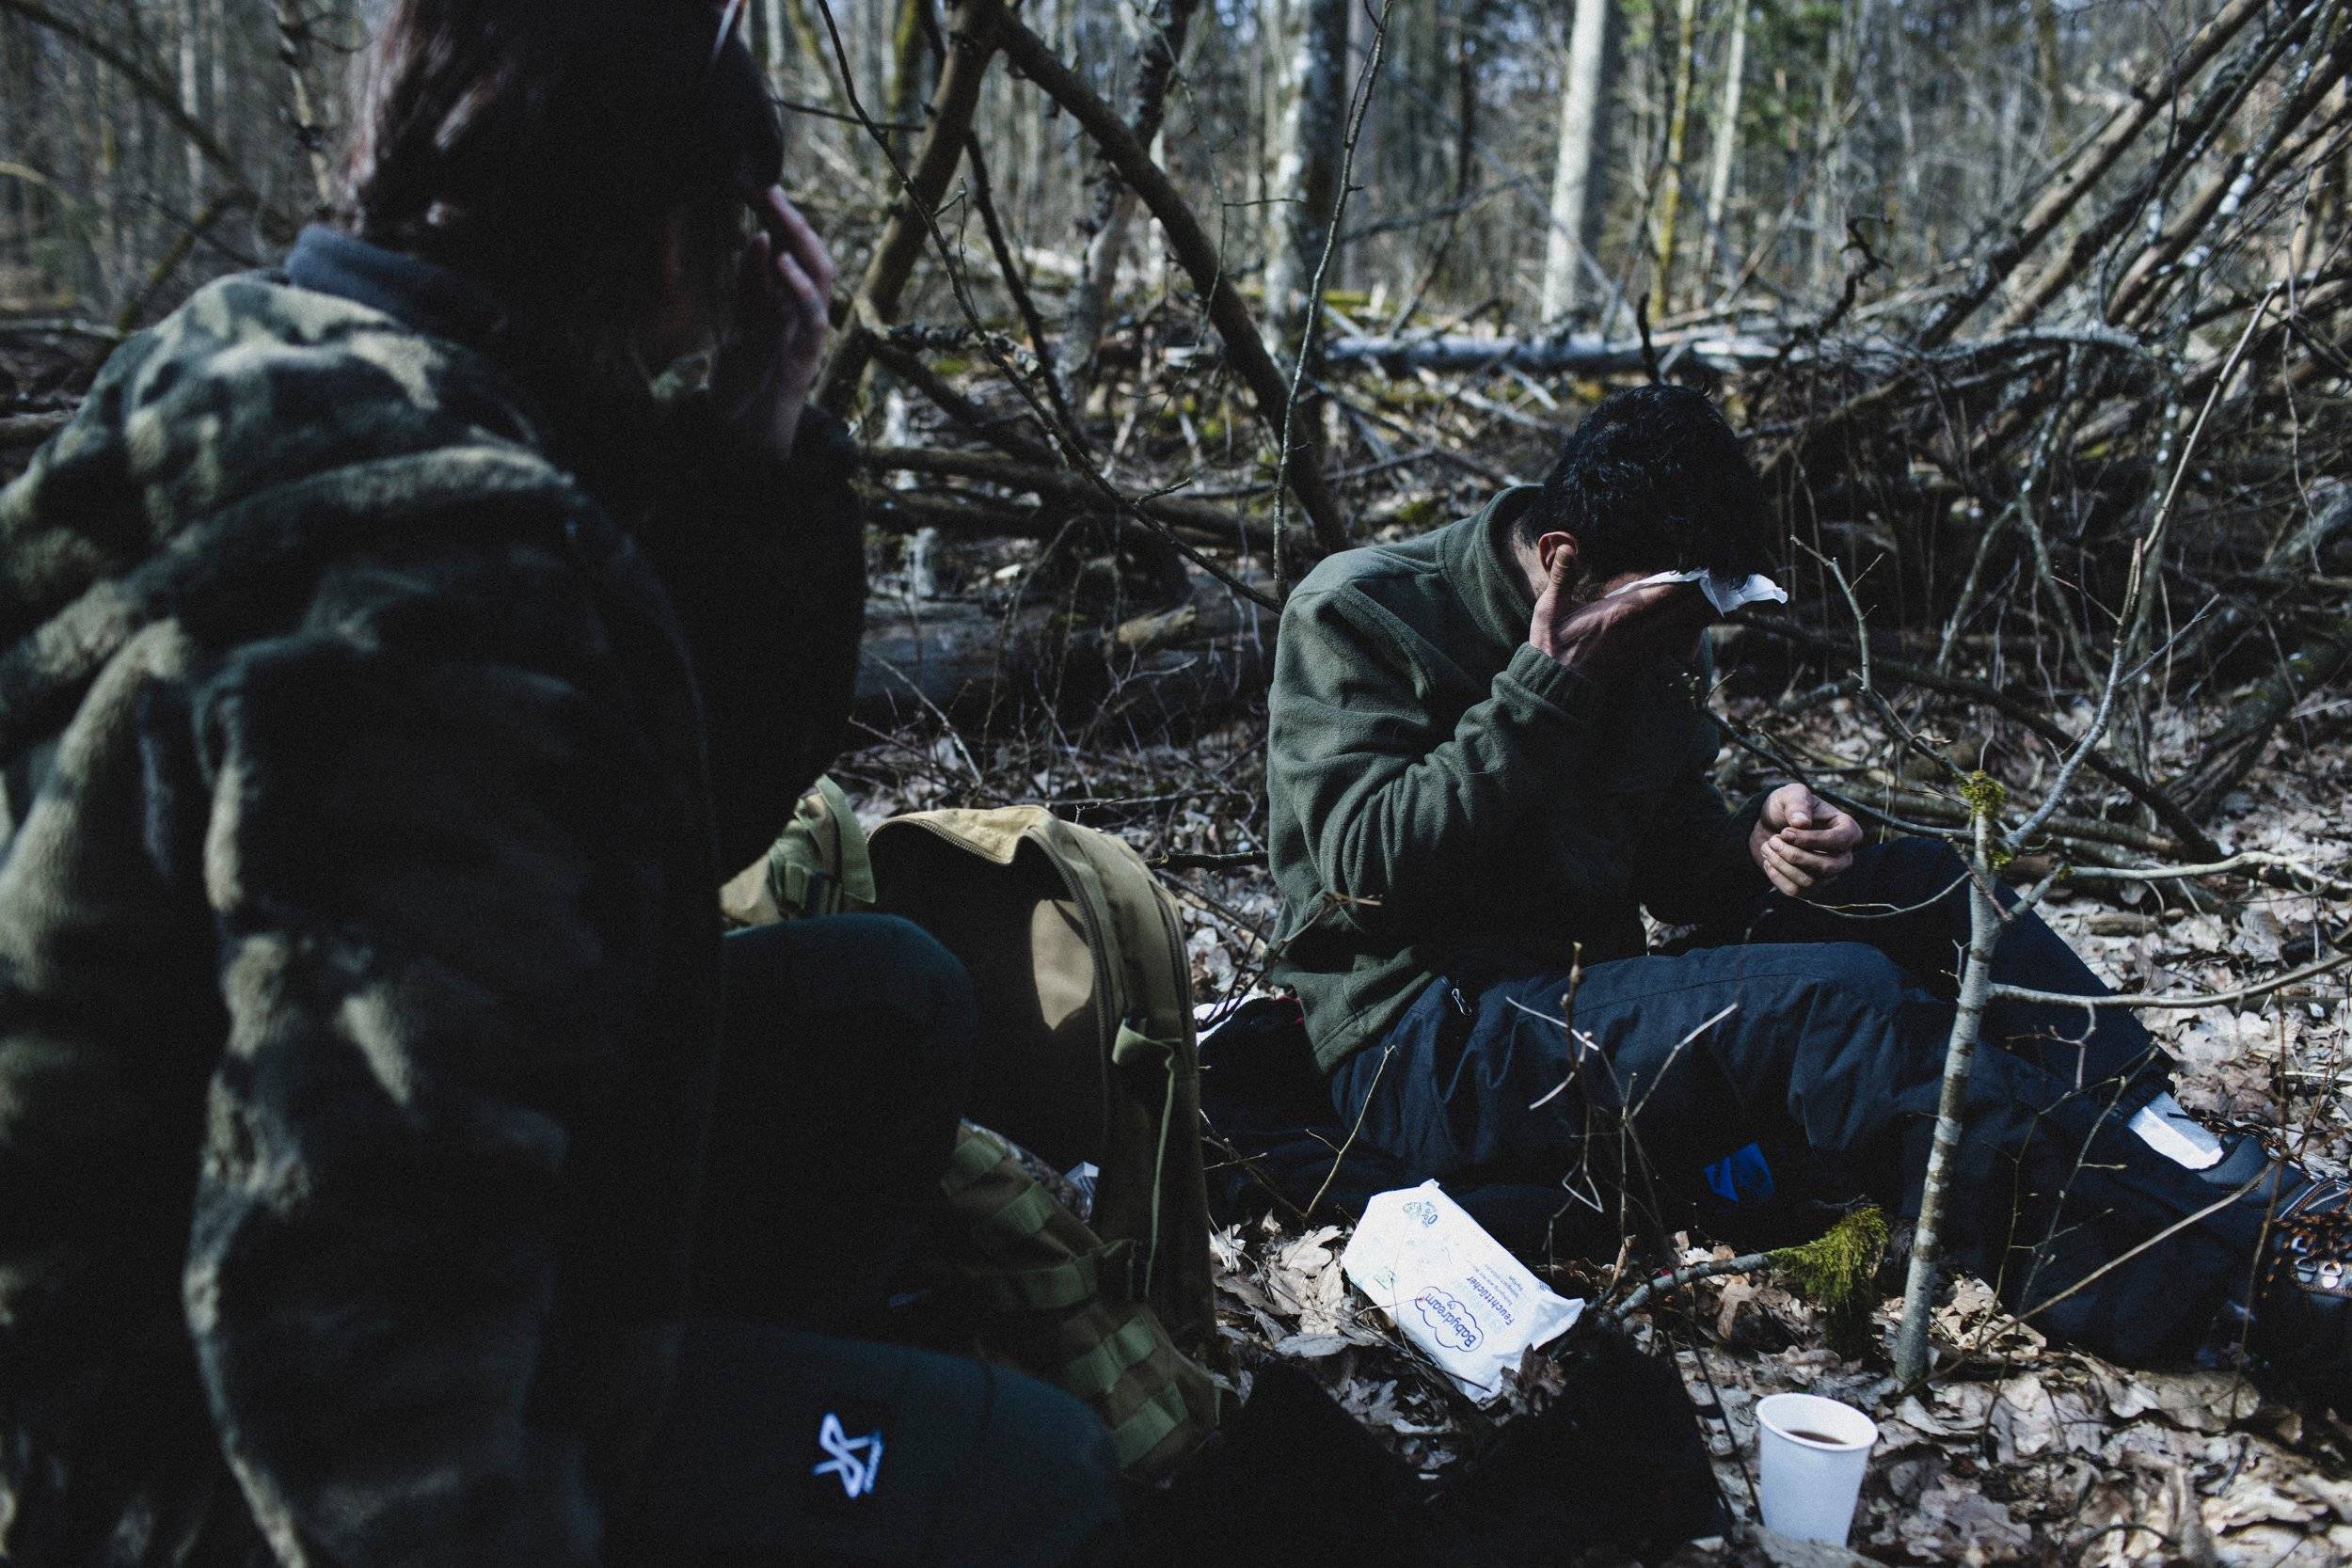 Dwaj uchodżcy siedzą w lesie, jeden z nich wyciera chusteczką higieniczną twarz, drugi okrywa się kocem. Granica